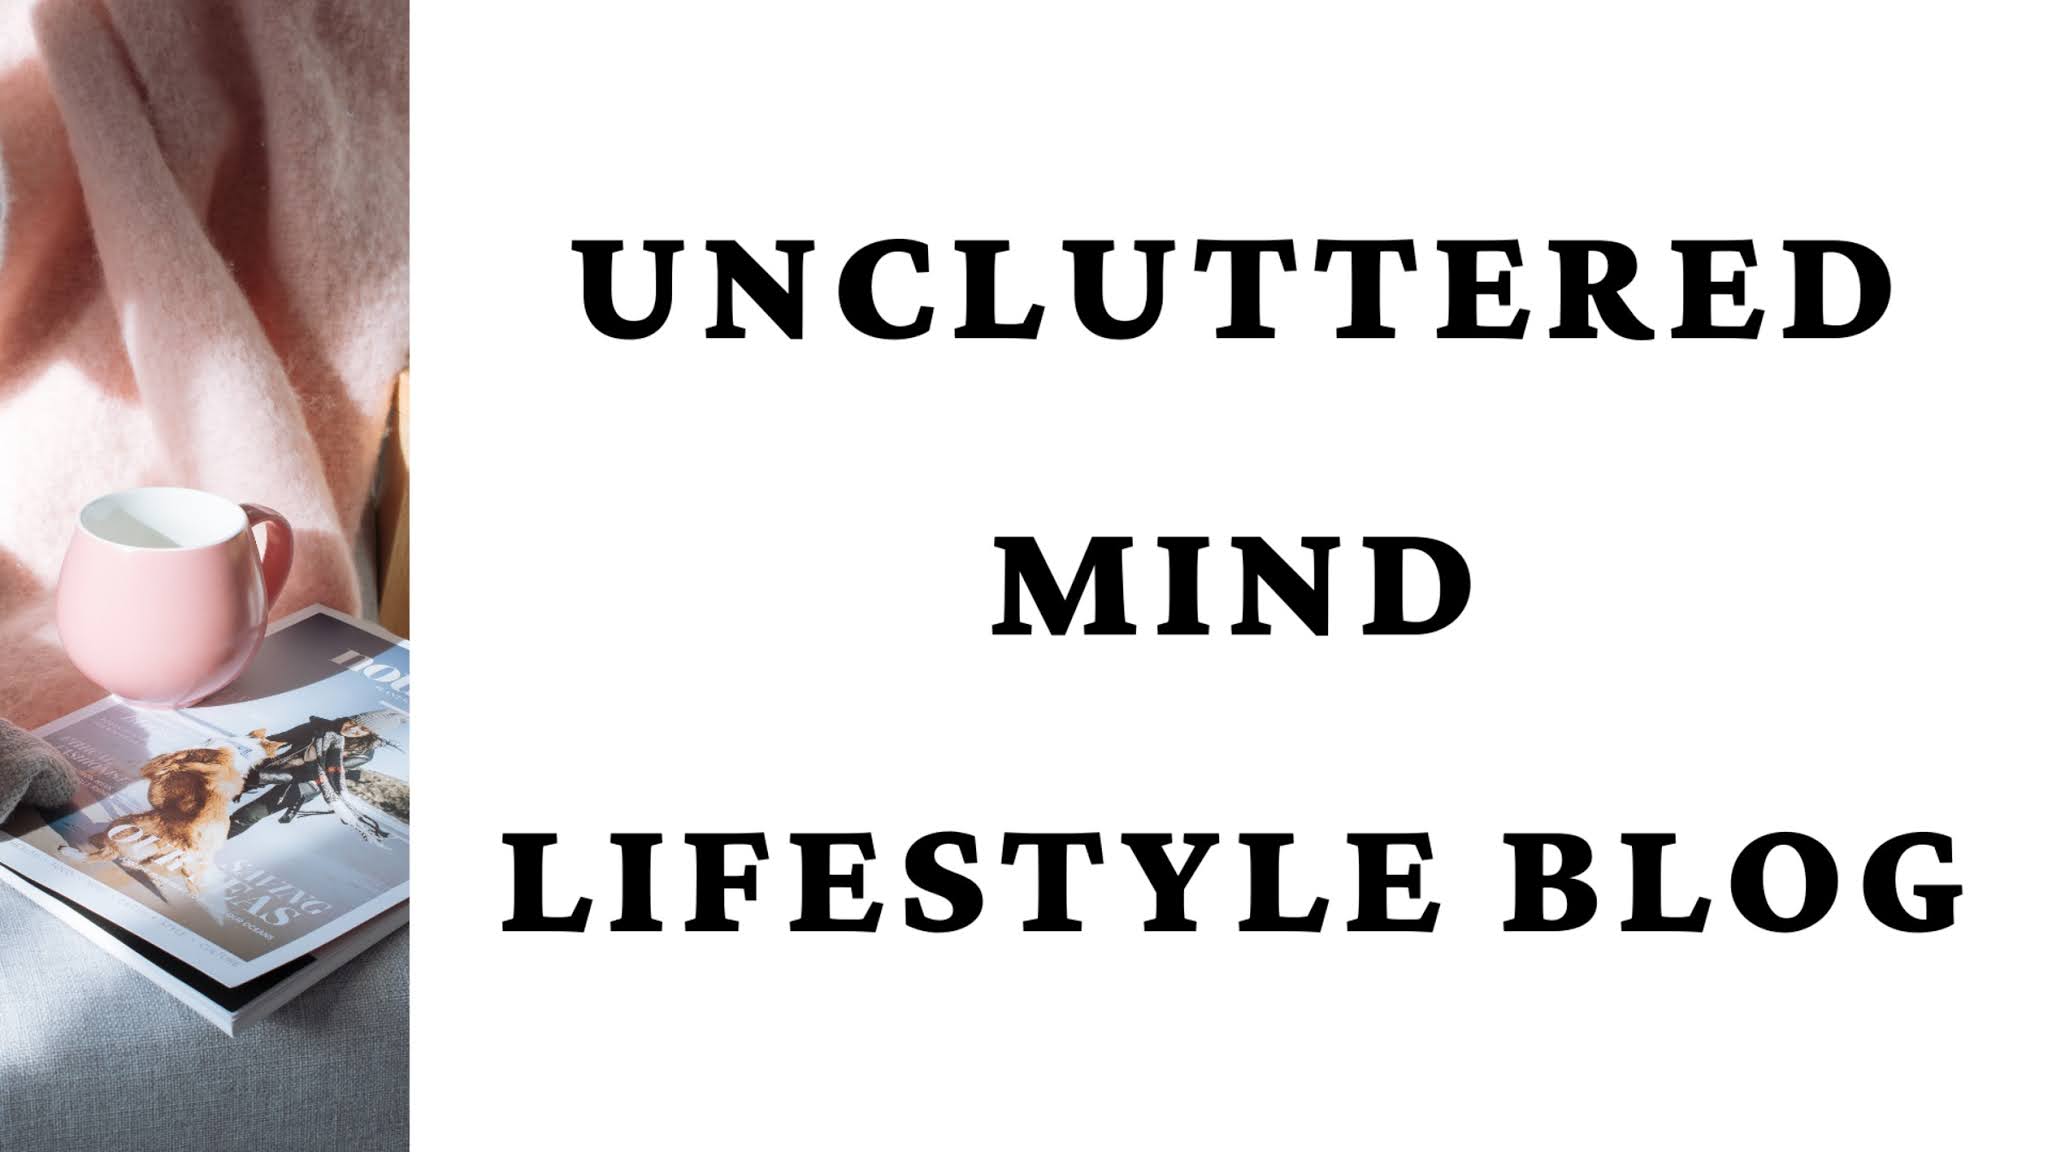 Uncluttered Mind - Lifestyle Blog